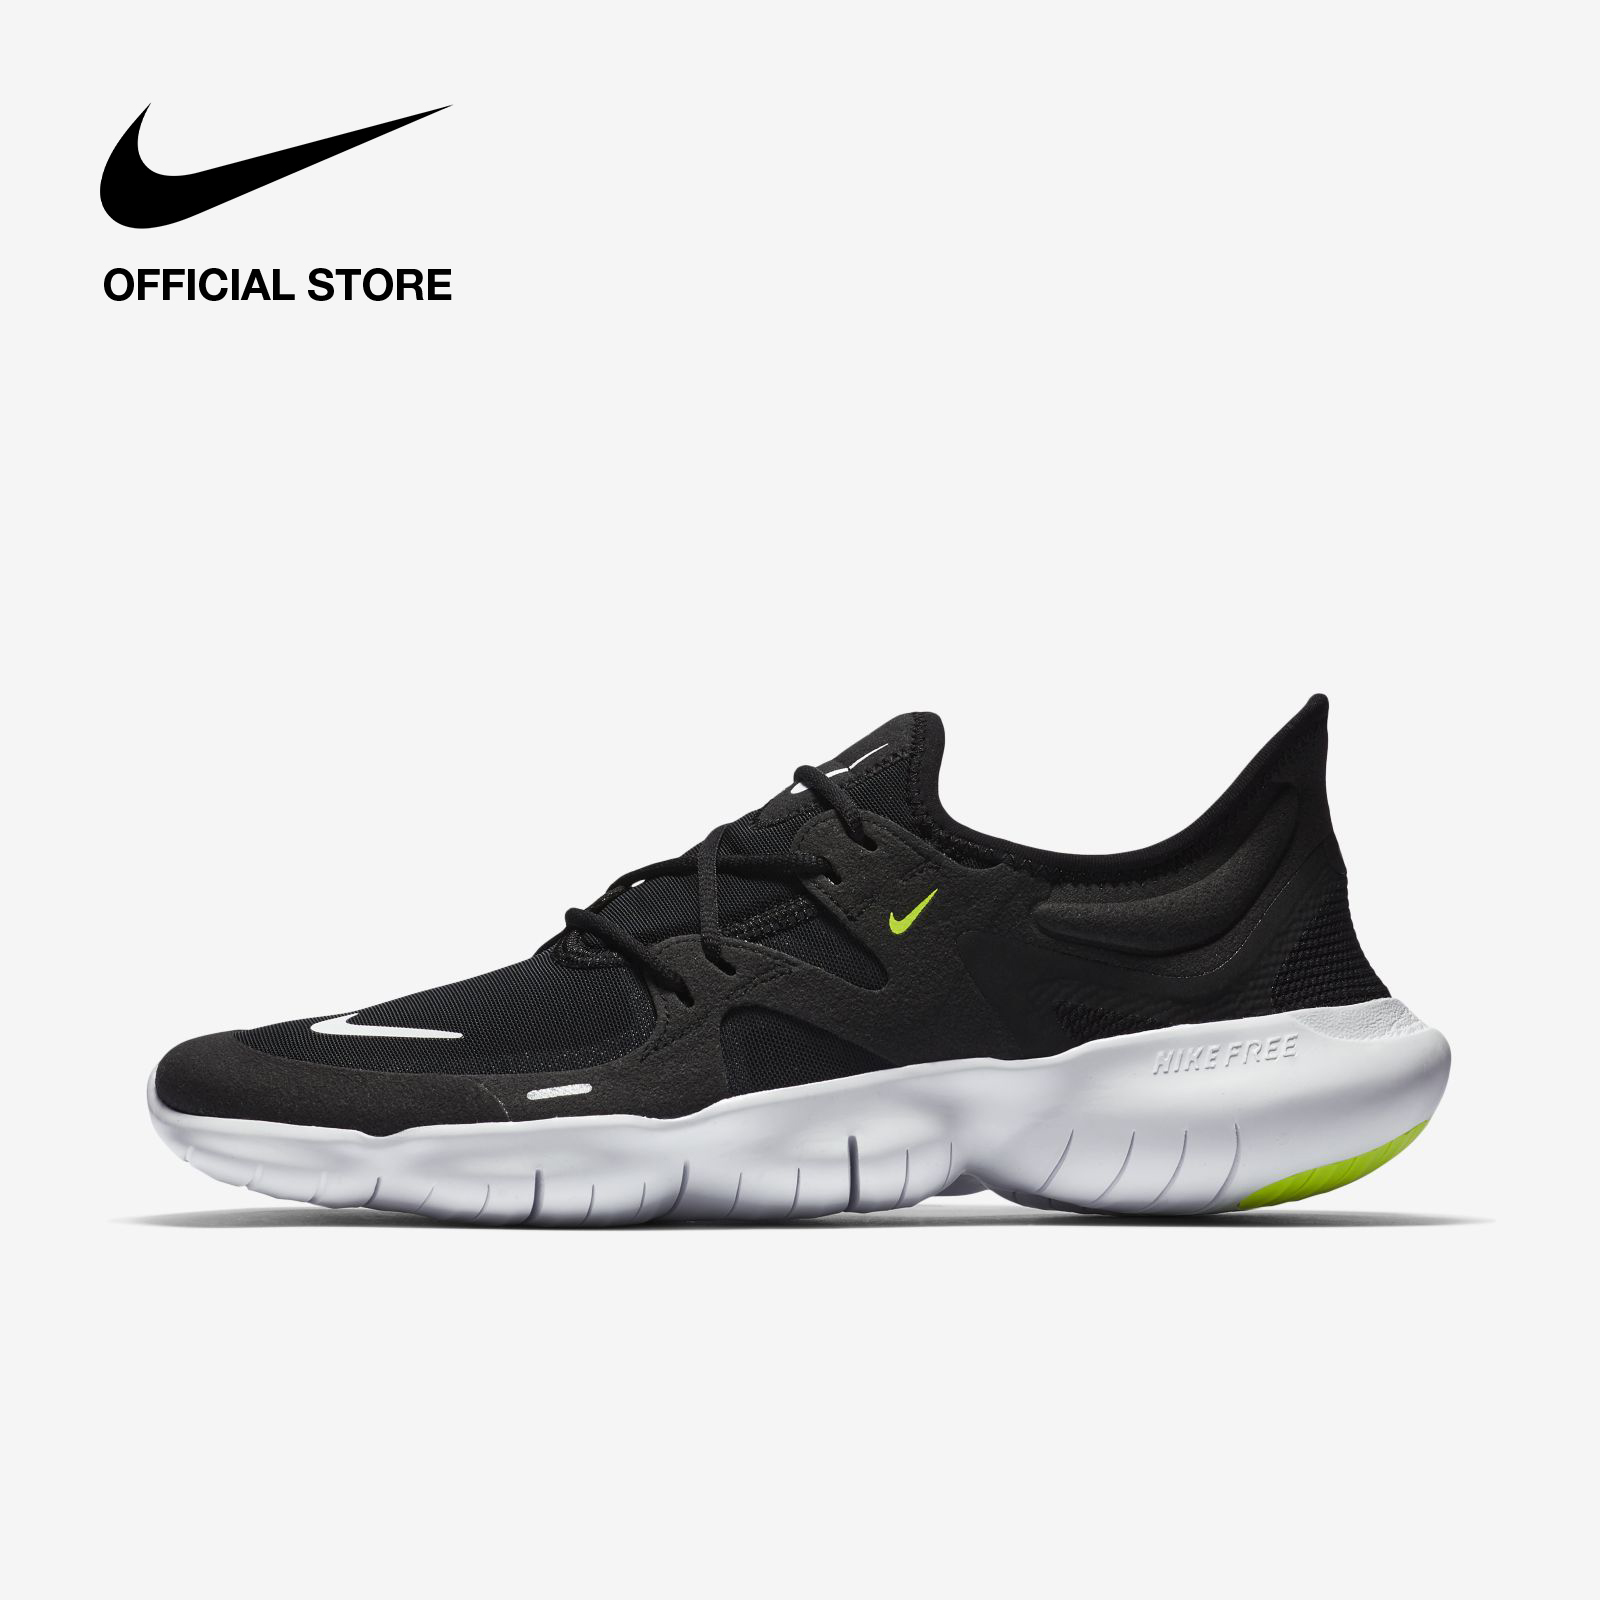 Nike Men's Free RN 5 Running Shoes - Black ไนกี้ รองเท้าวิ่งผู้ชาย ฟรี อาร์เอ็น 5 - สีดำ